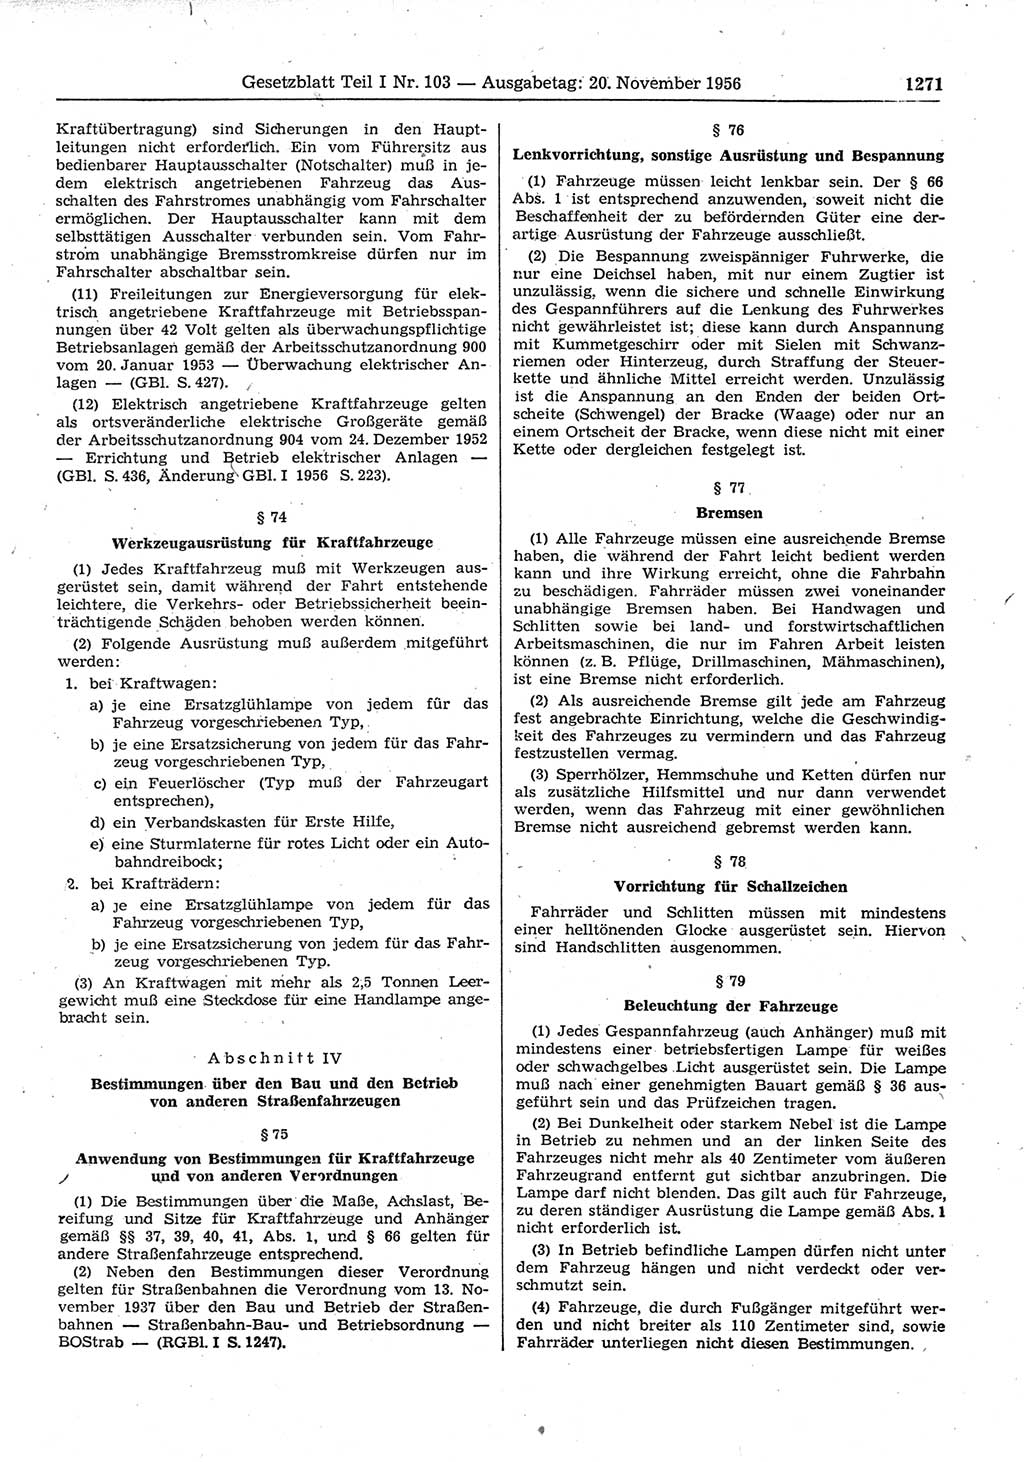 Gesetzblatt (GBl.) der Deutschen Demokratischen Republik (DDR) Teil Ⅰ 1956, Seite 1271 (GBl. DDR Ⅰ 1956, S. 1271)